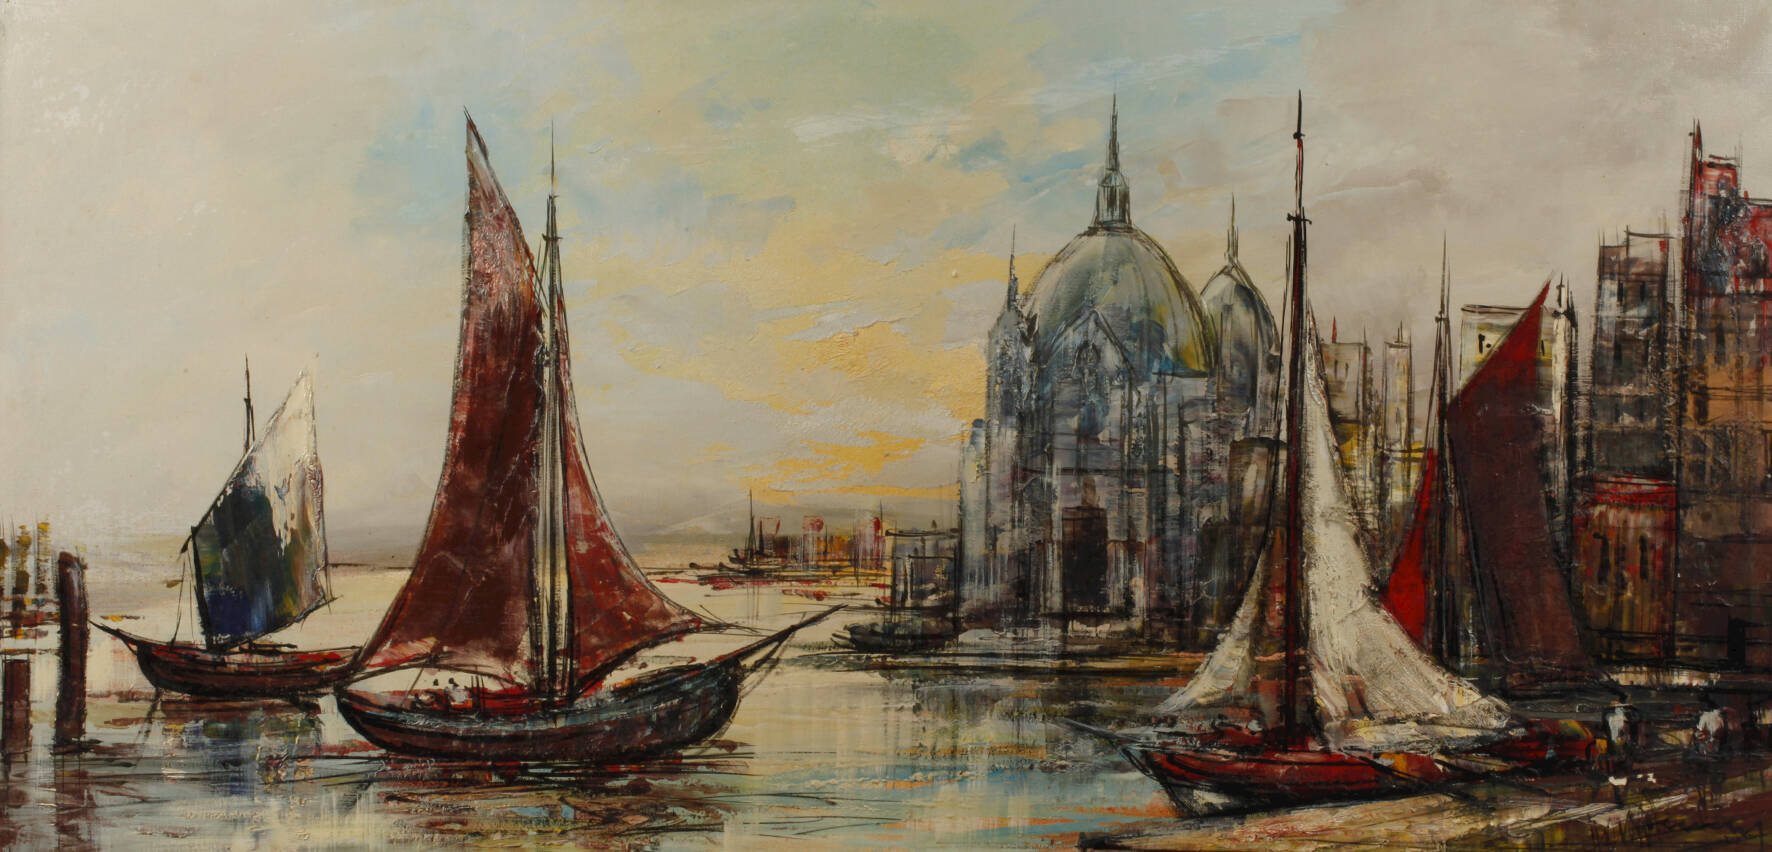 Ansicht von Venedig